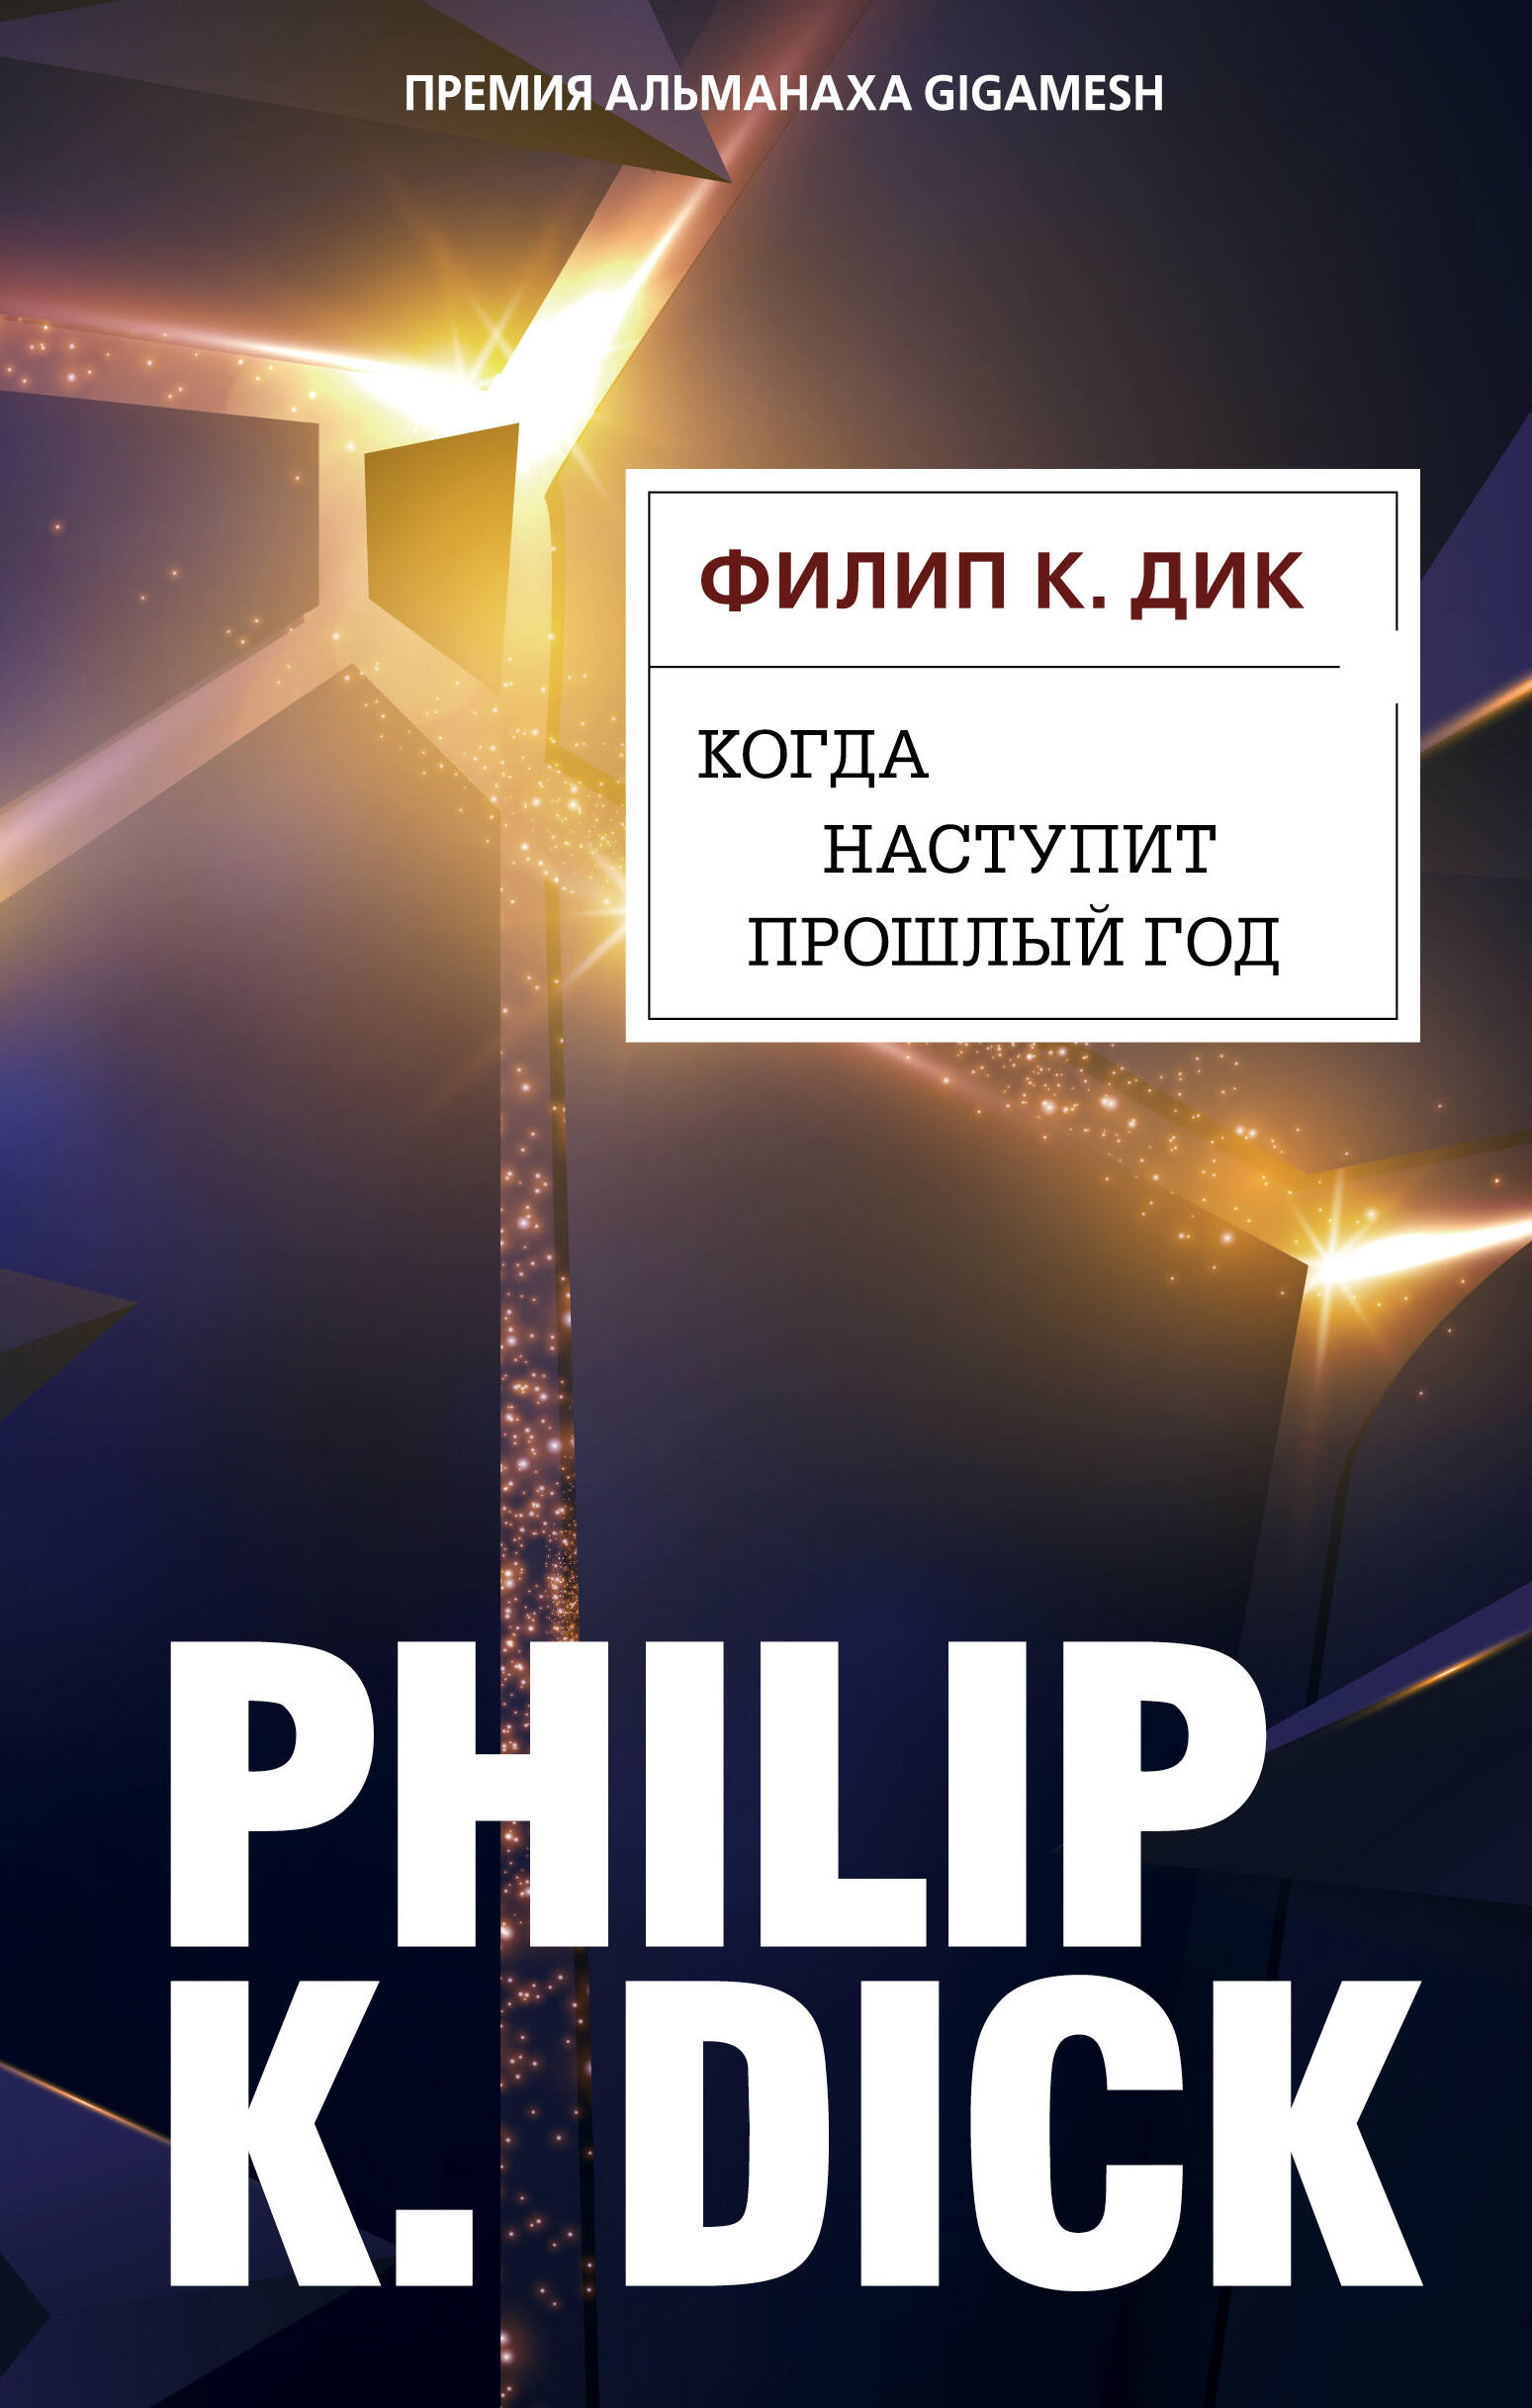 Дик Филип Киндред - Когда наступит прошлый год